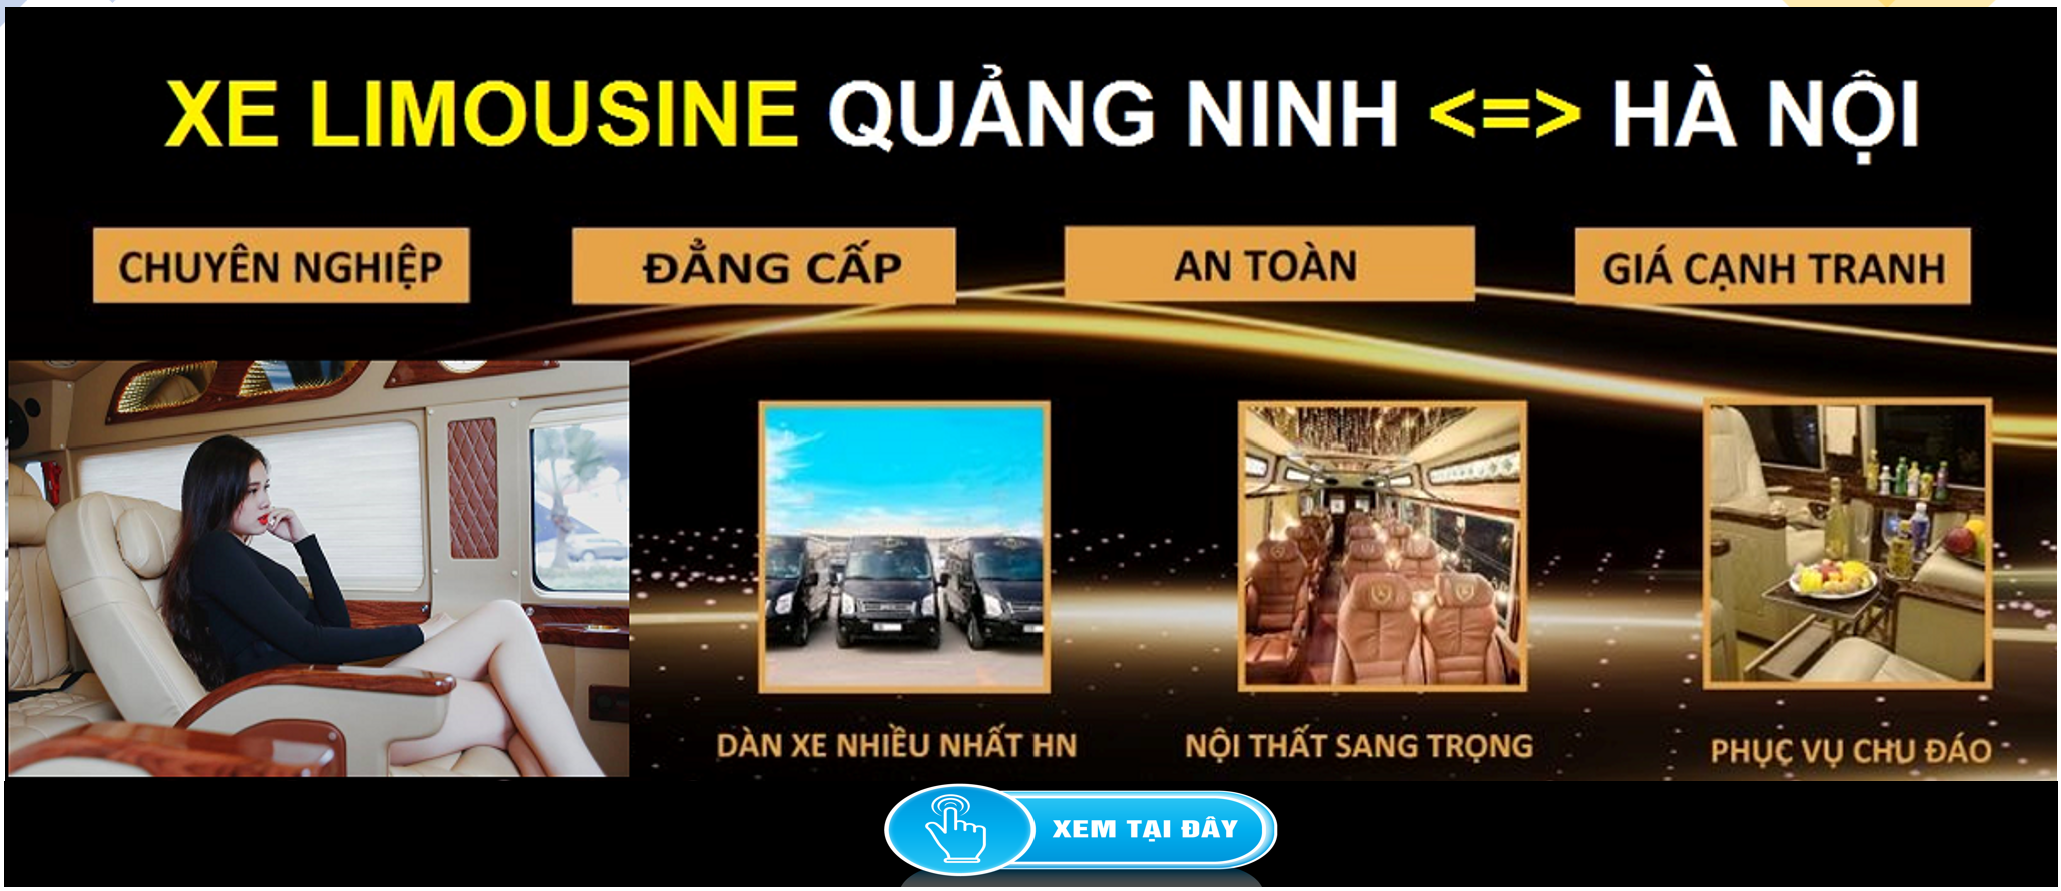 Xe Limousine Ha Noi Quang Ninh dua don tai nha 1d - Bảng giá thông số kỹ thuật ô tô điện VinFast VF 6